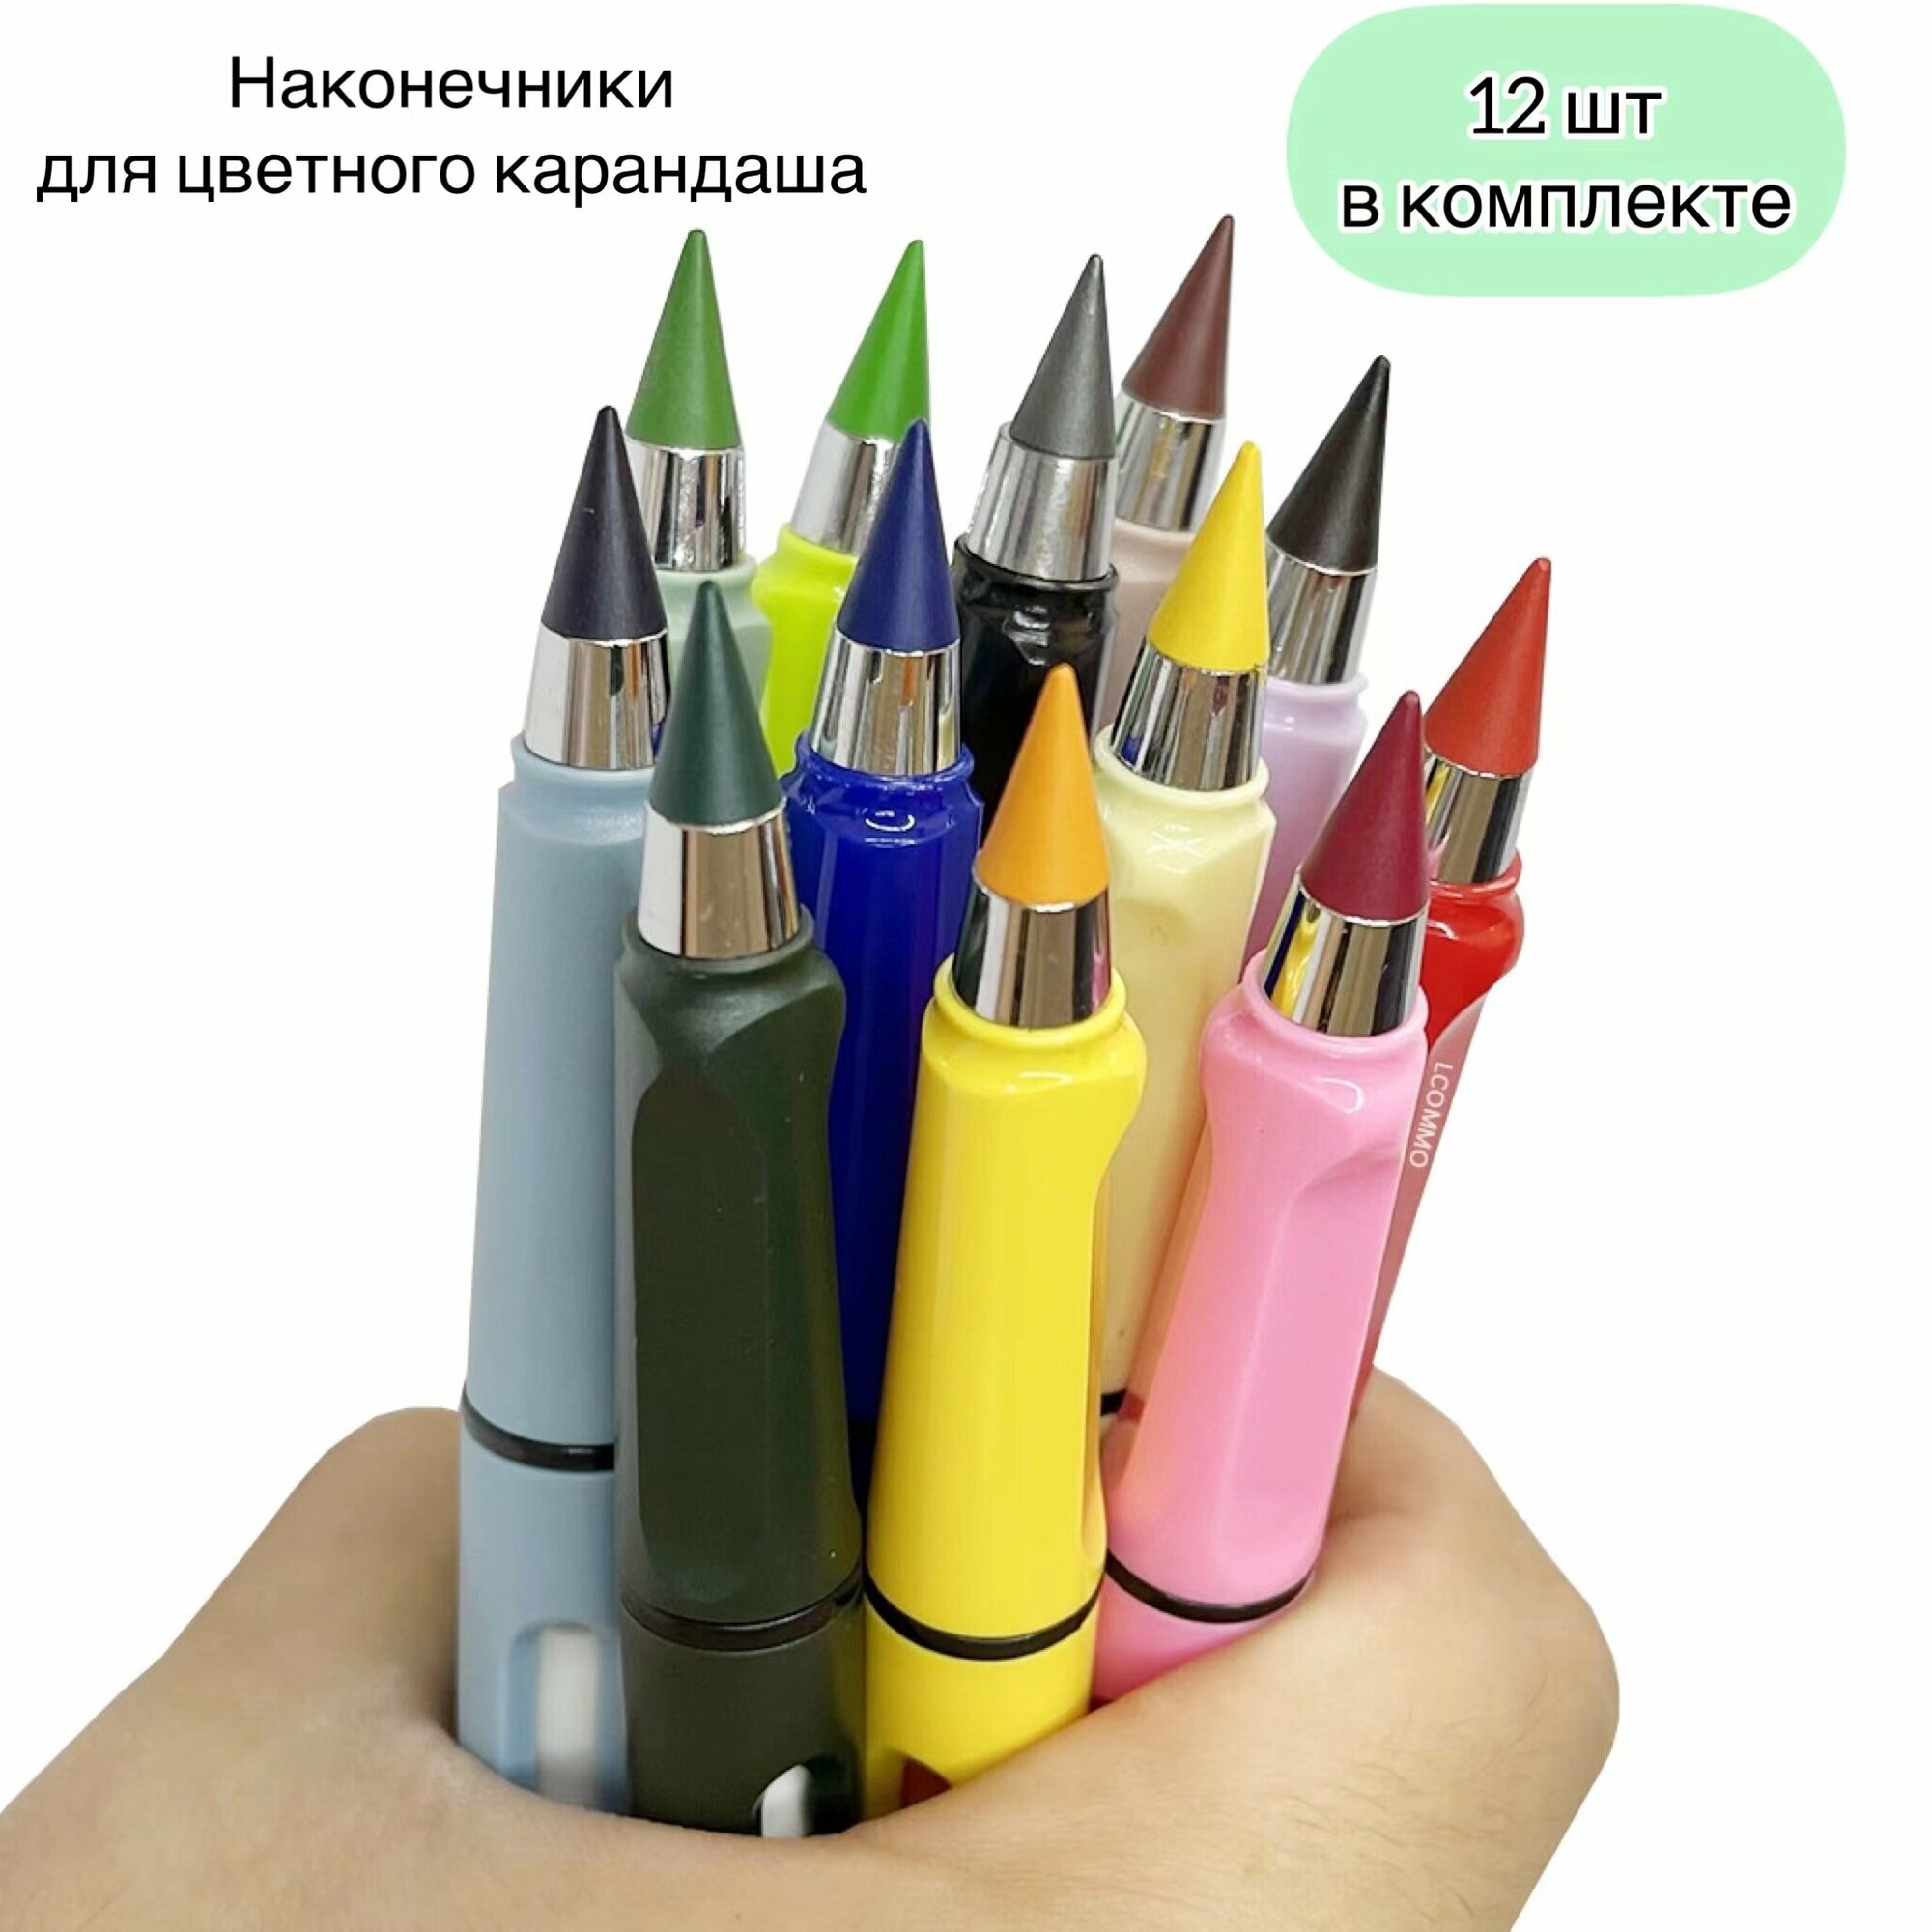 Цветные грифели для "Вечных" карандашей, 12 шт. /сменные наконечники